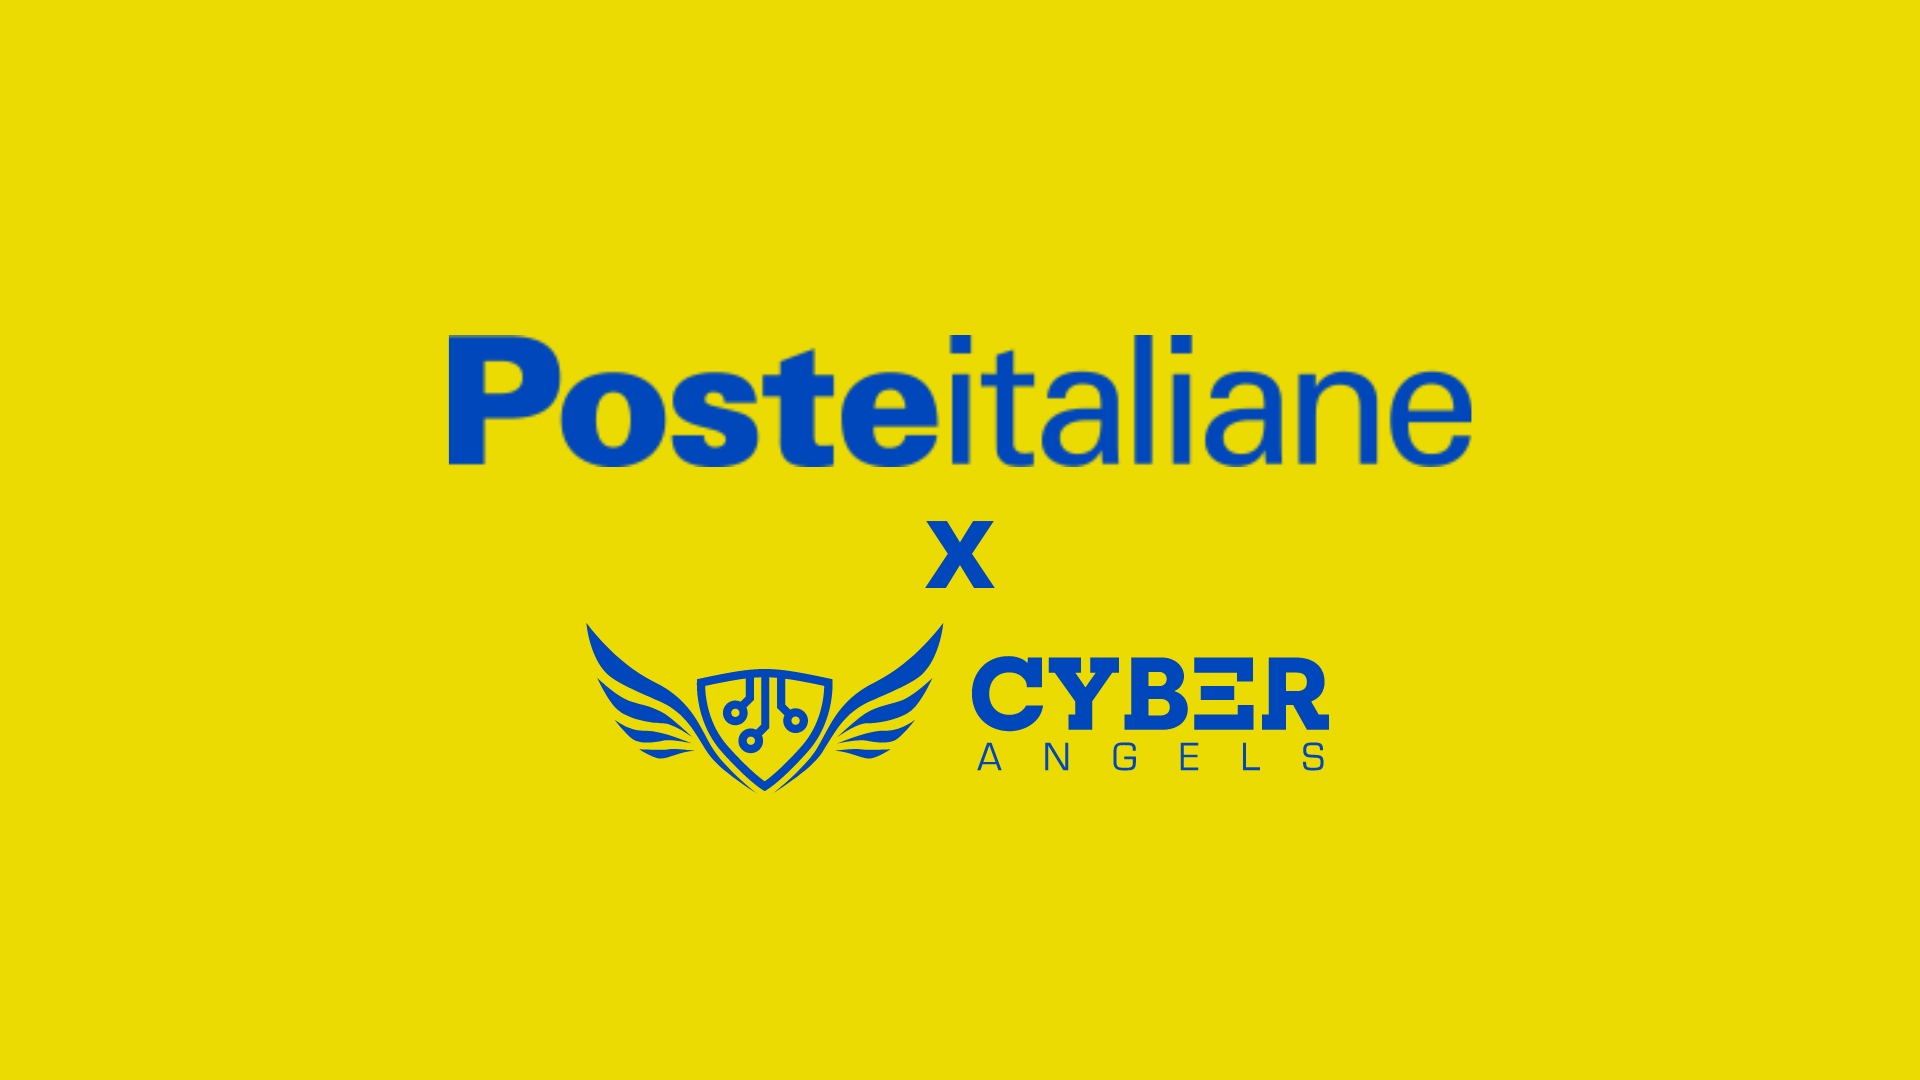 Poste Italiane und Cyberangels: Eine Zusammenarbeit für Italiens digitale Zukunft